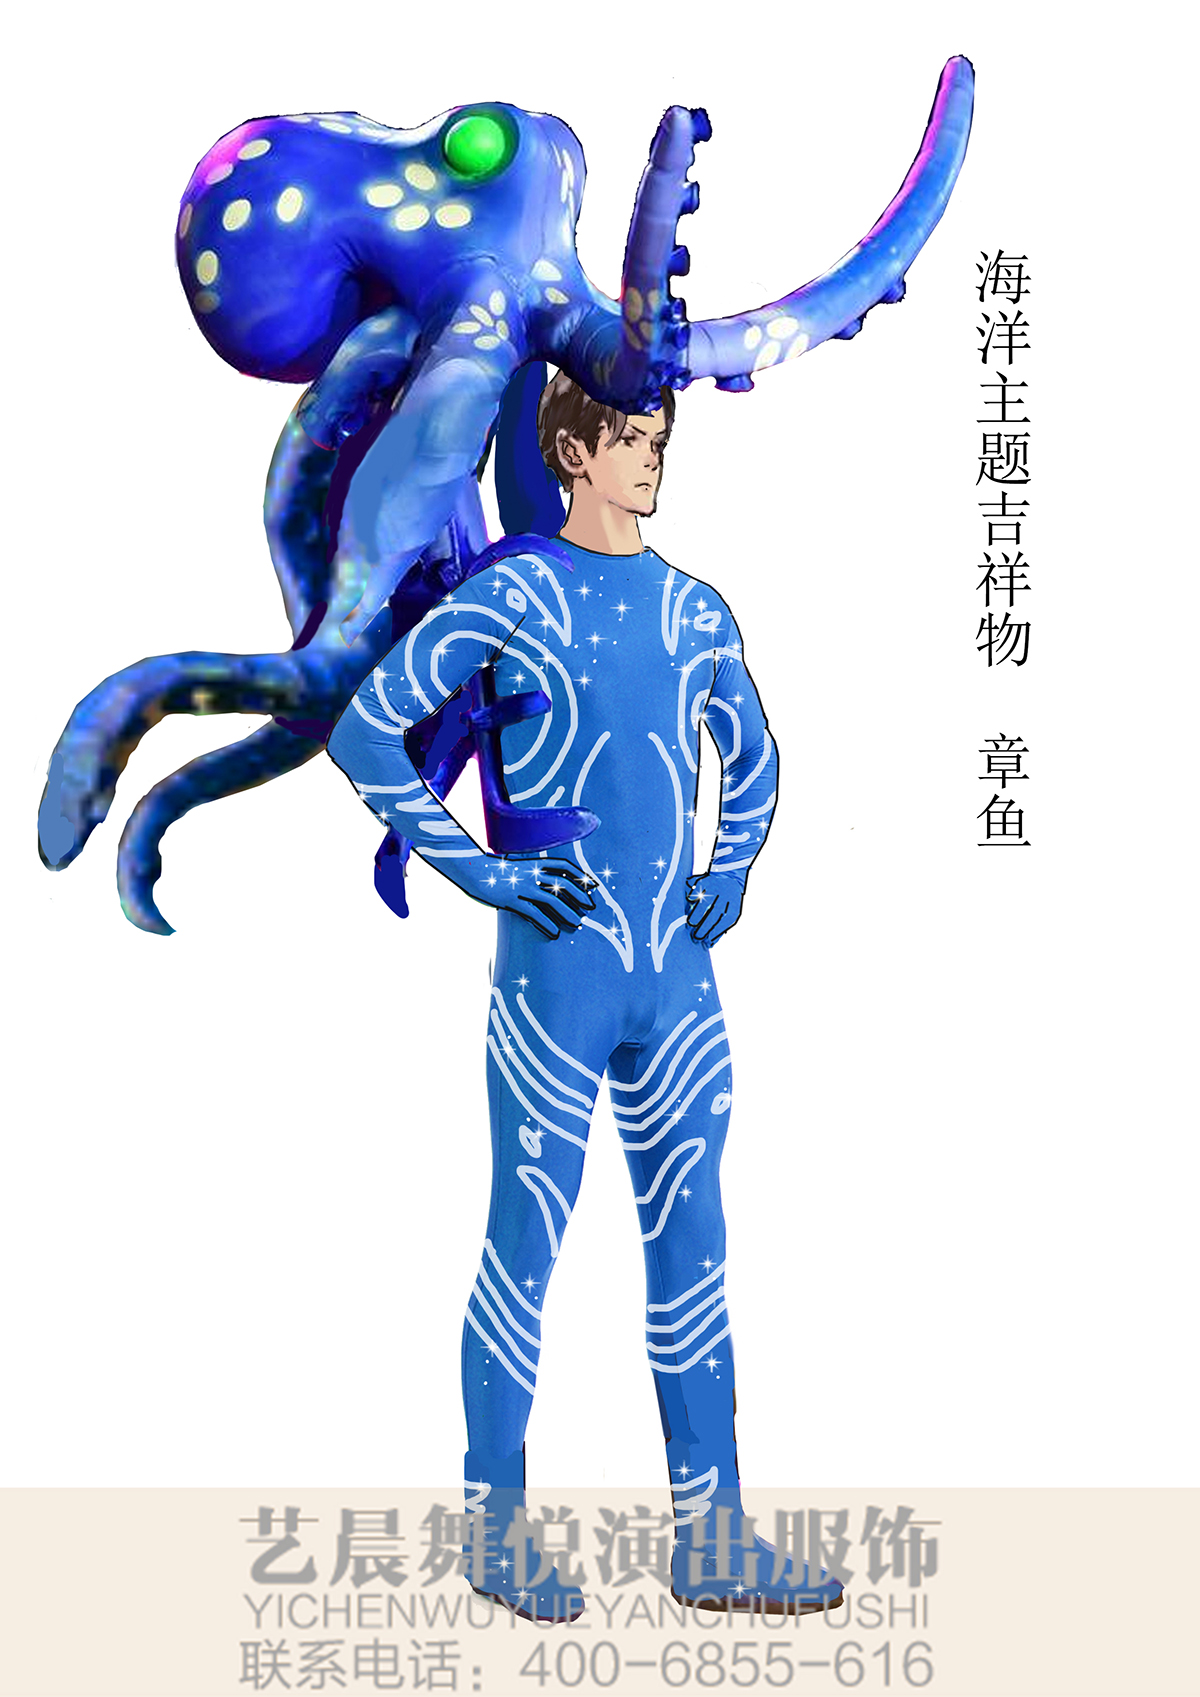 海洋主题吉祥物章鱼服装定制